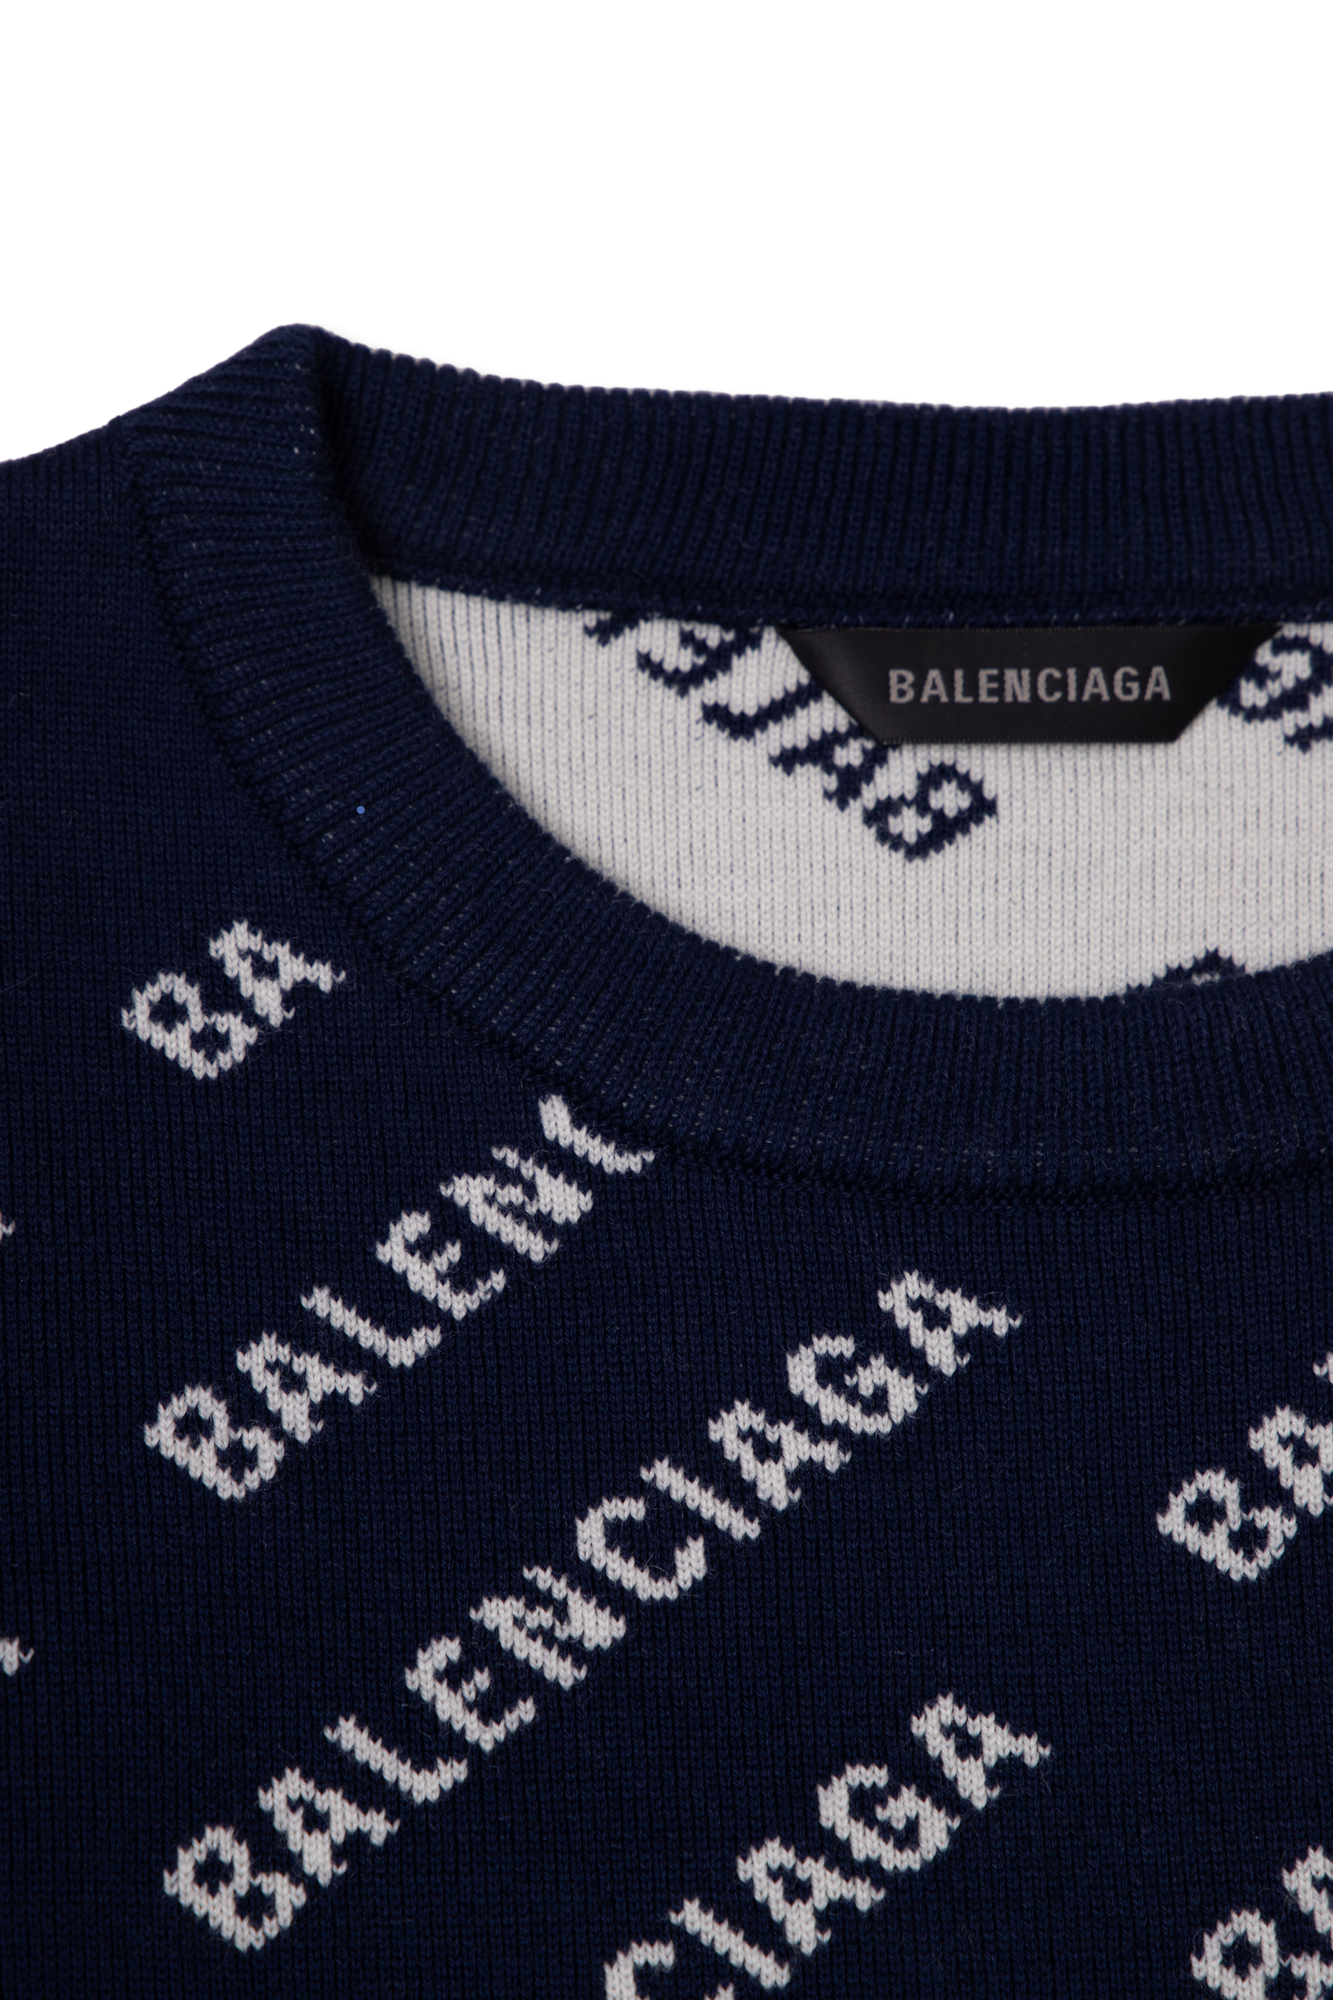 Balenciaga Kids shirt features clean lines